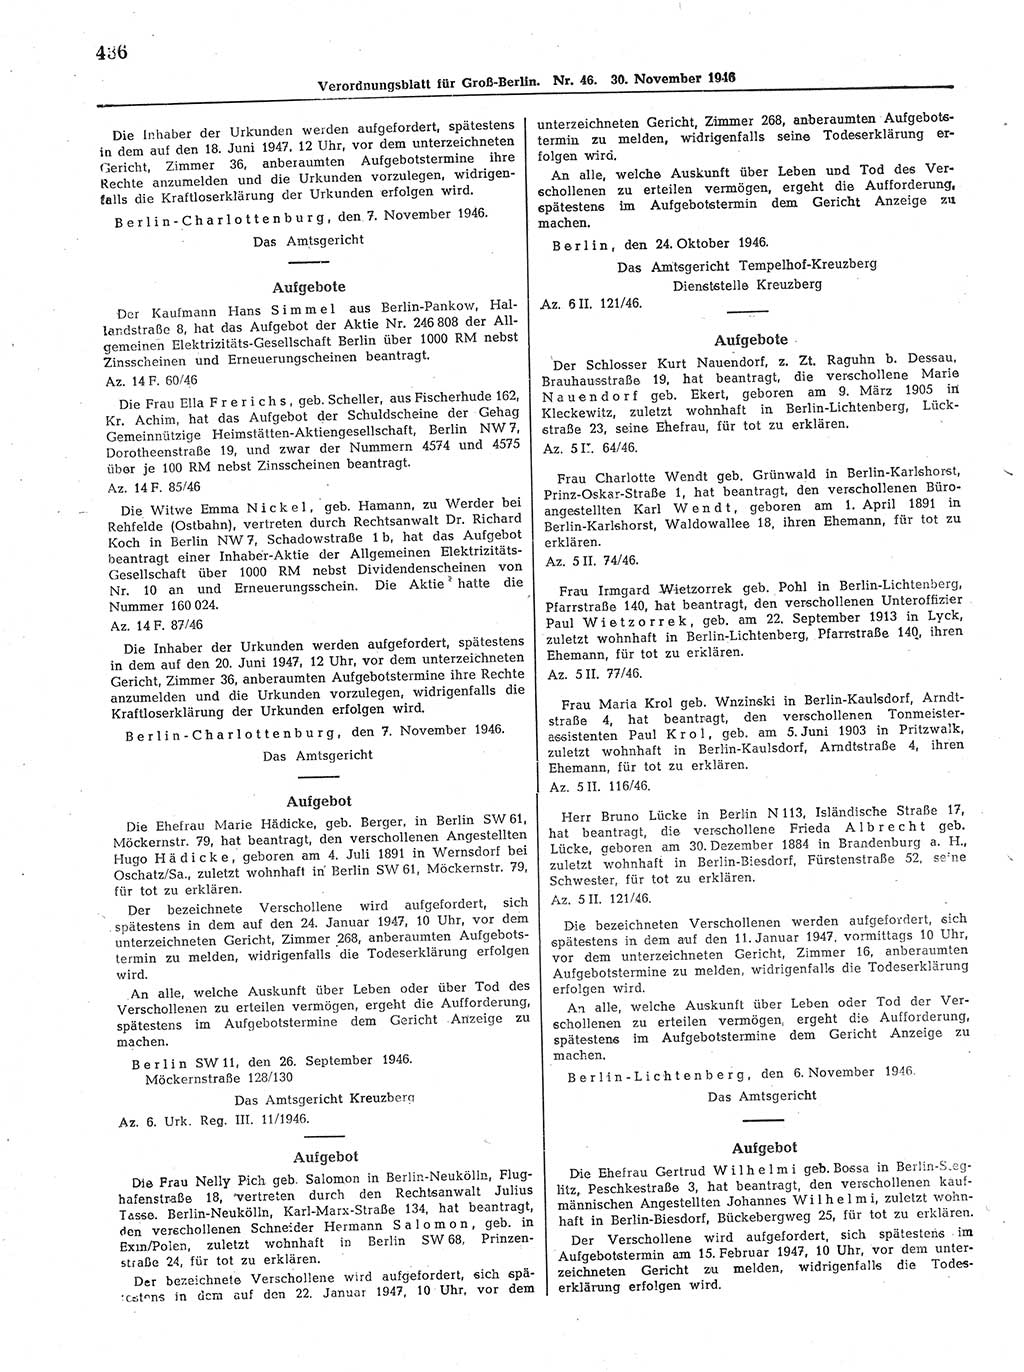 Verordnungsblatt (VOBl.) der Stadt Berlin, für Groß-Berlin 1946, Seite 436 (VOBl. Bln. 1946, S. 436)